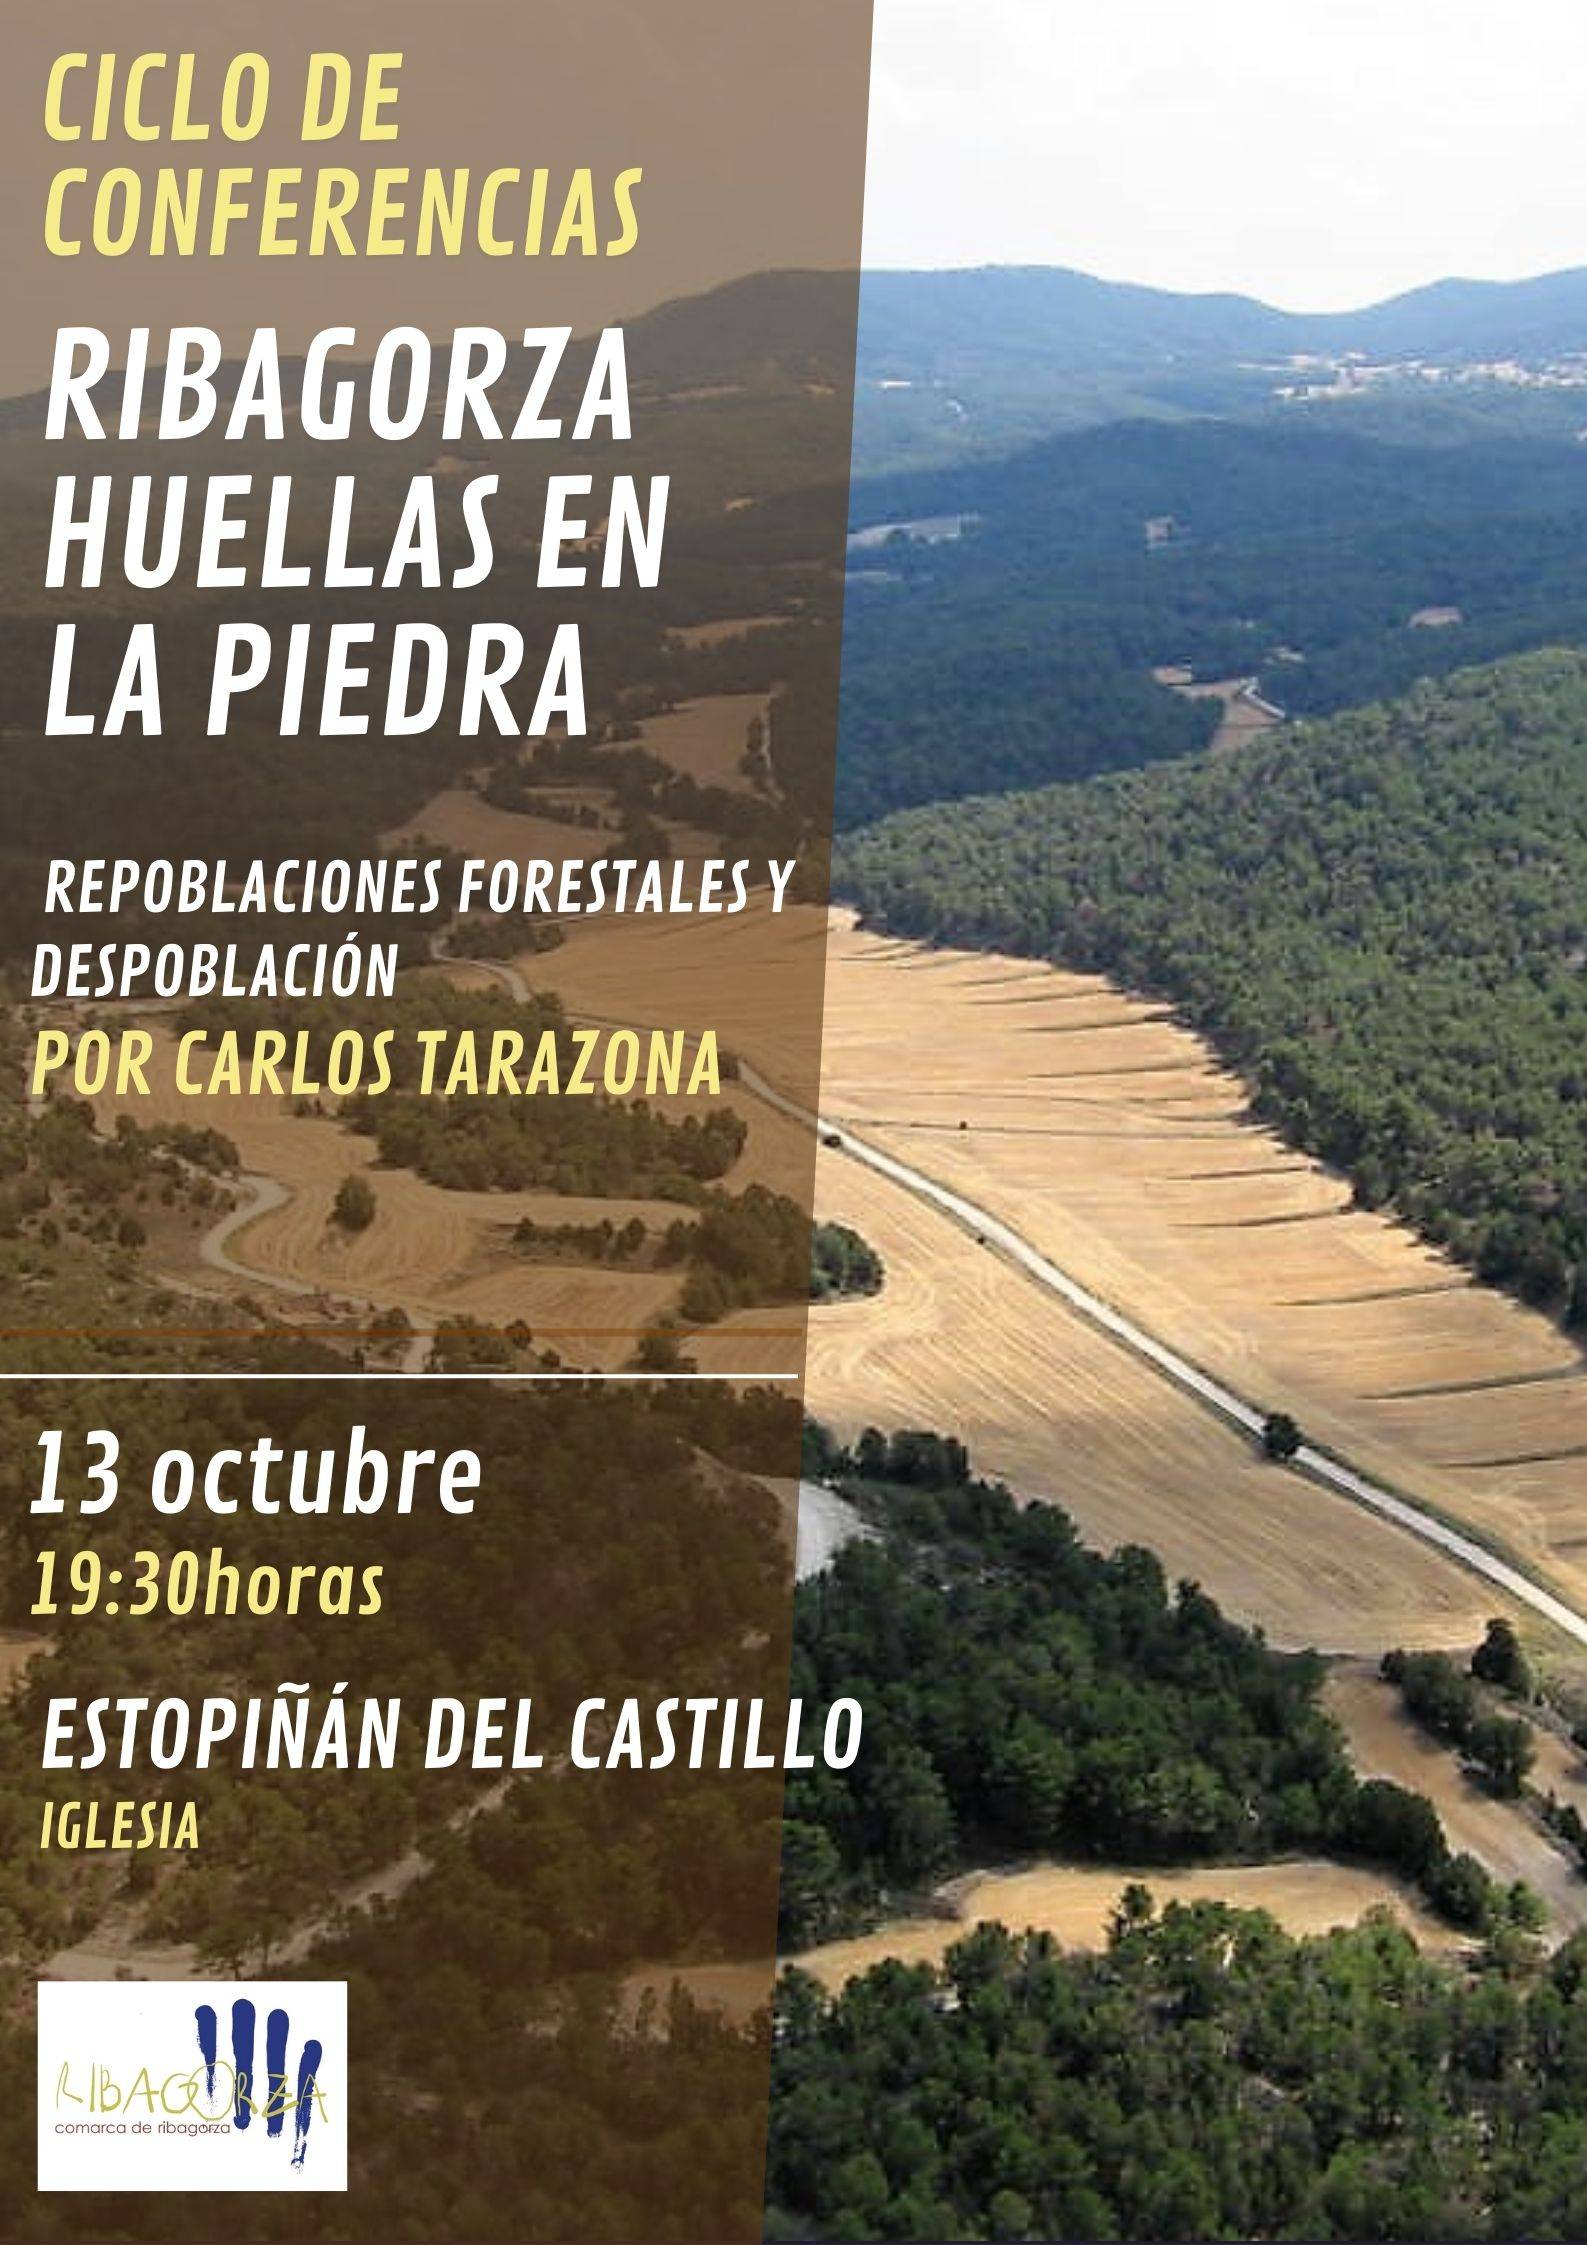 Conferencia "Repoblaciones forestales y despoblación" por Carlos Tarazona